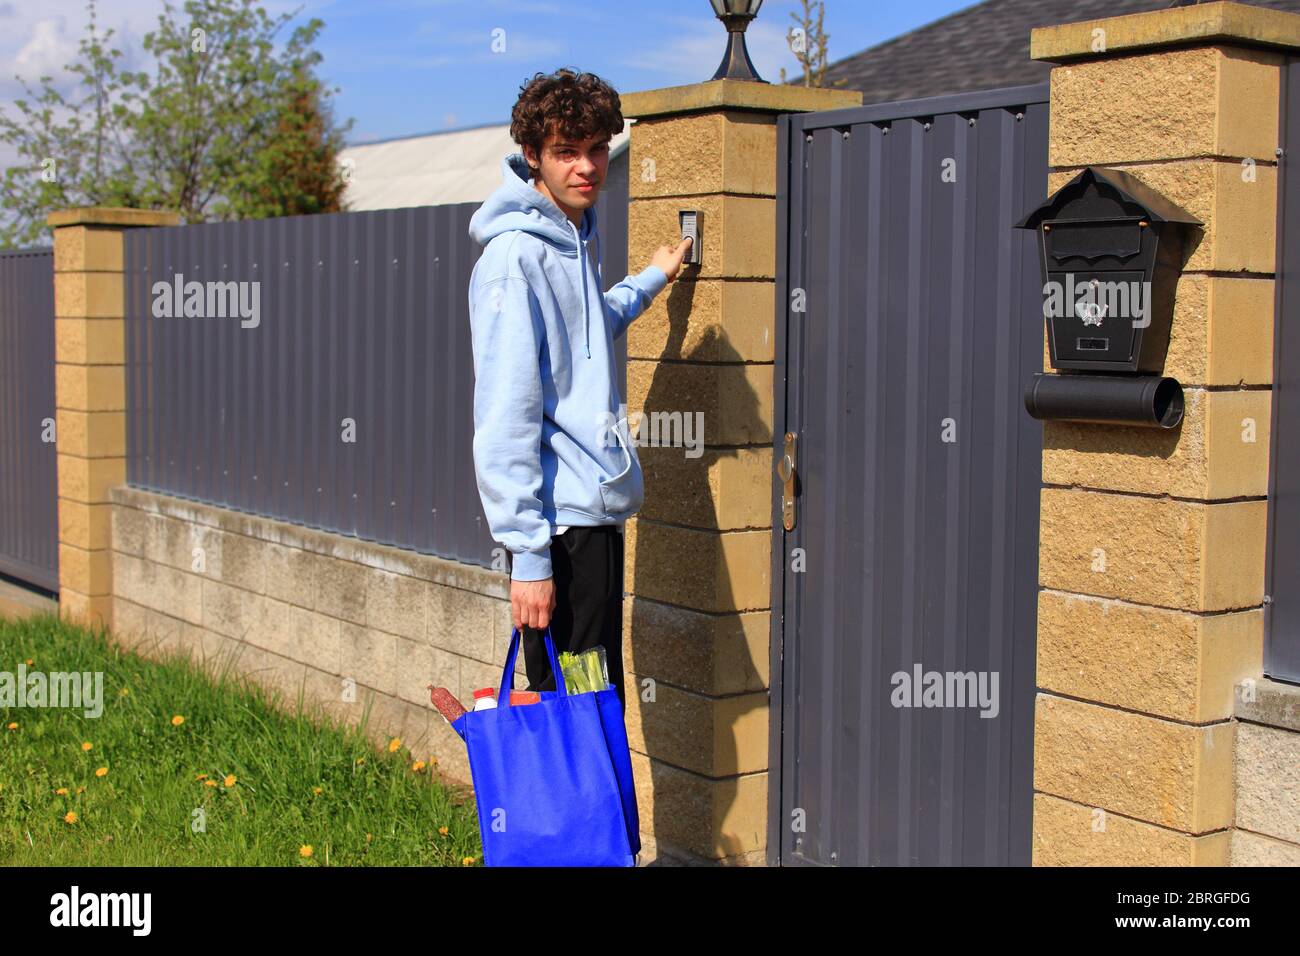 Un chico joven con una bolsa de productos en sus manos. Foto de stock